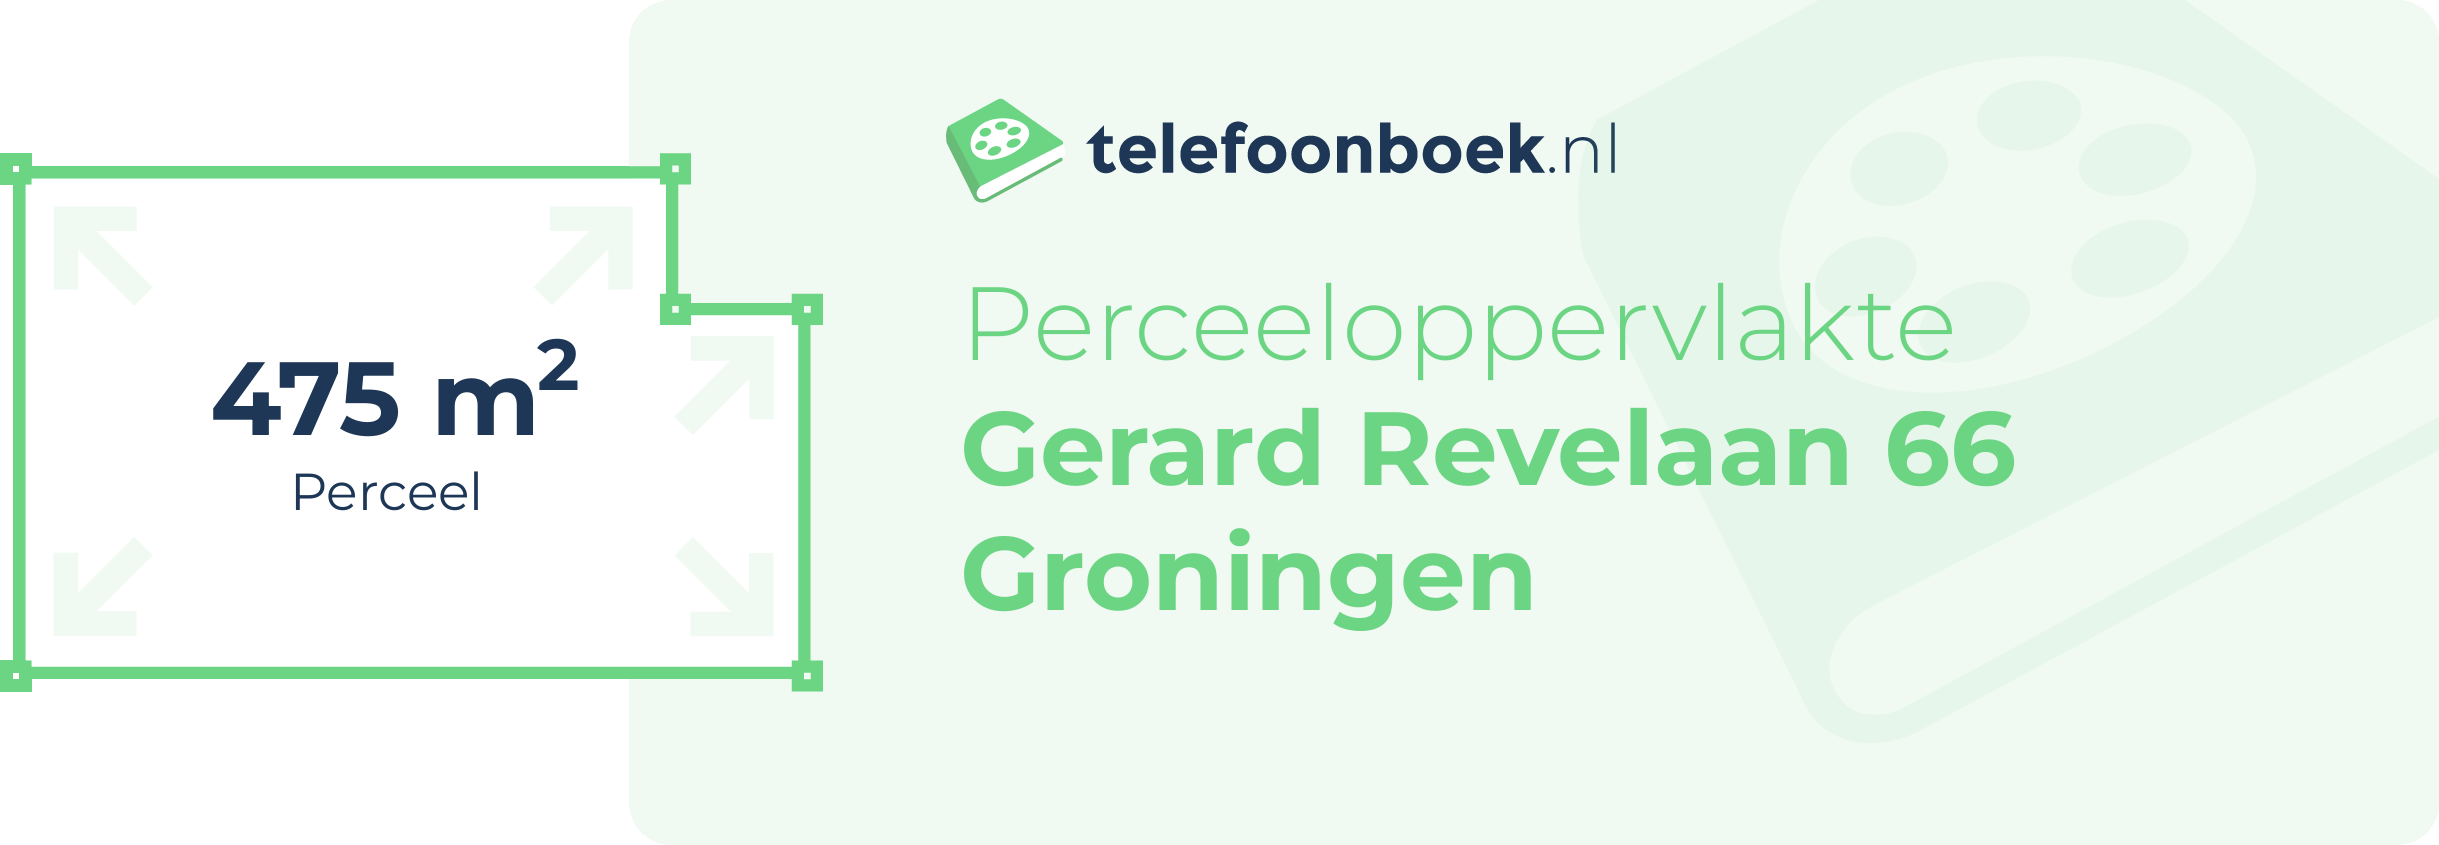 Perceeloppervlakte Gerard Revelaan 66 Groningen